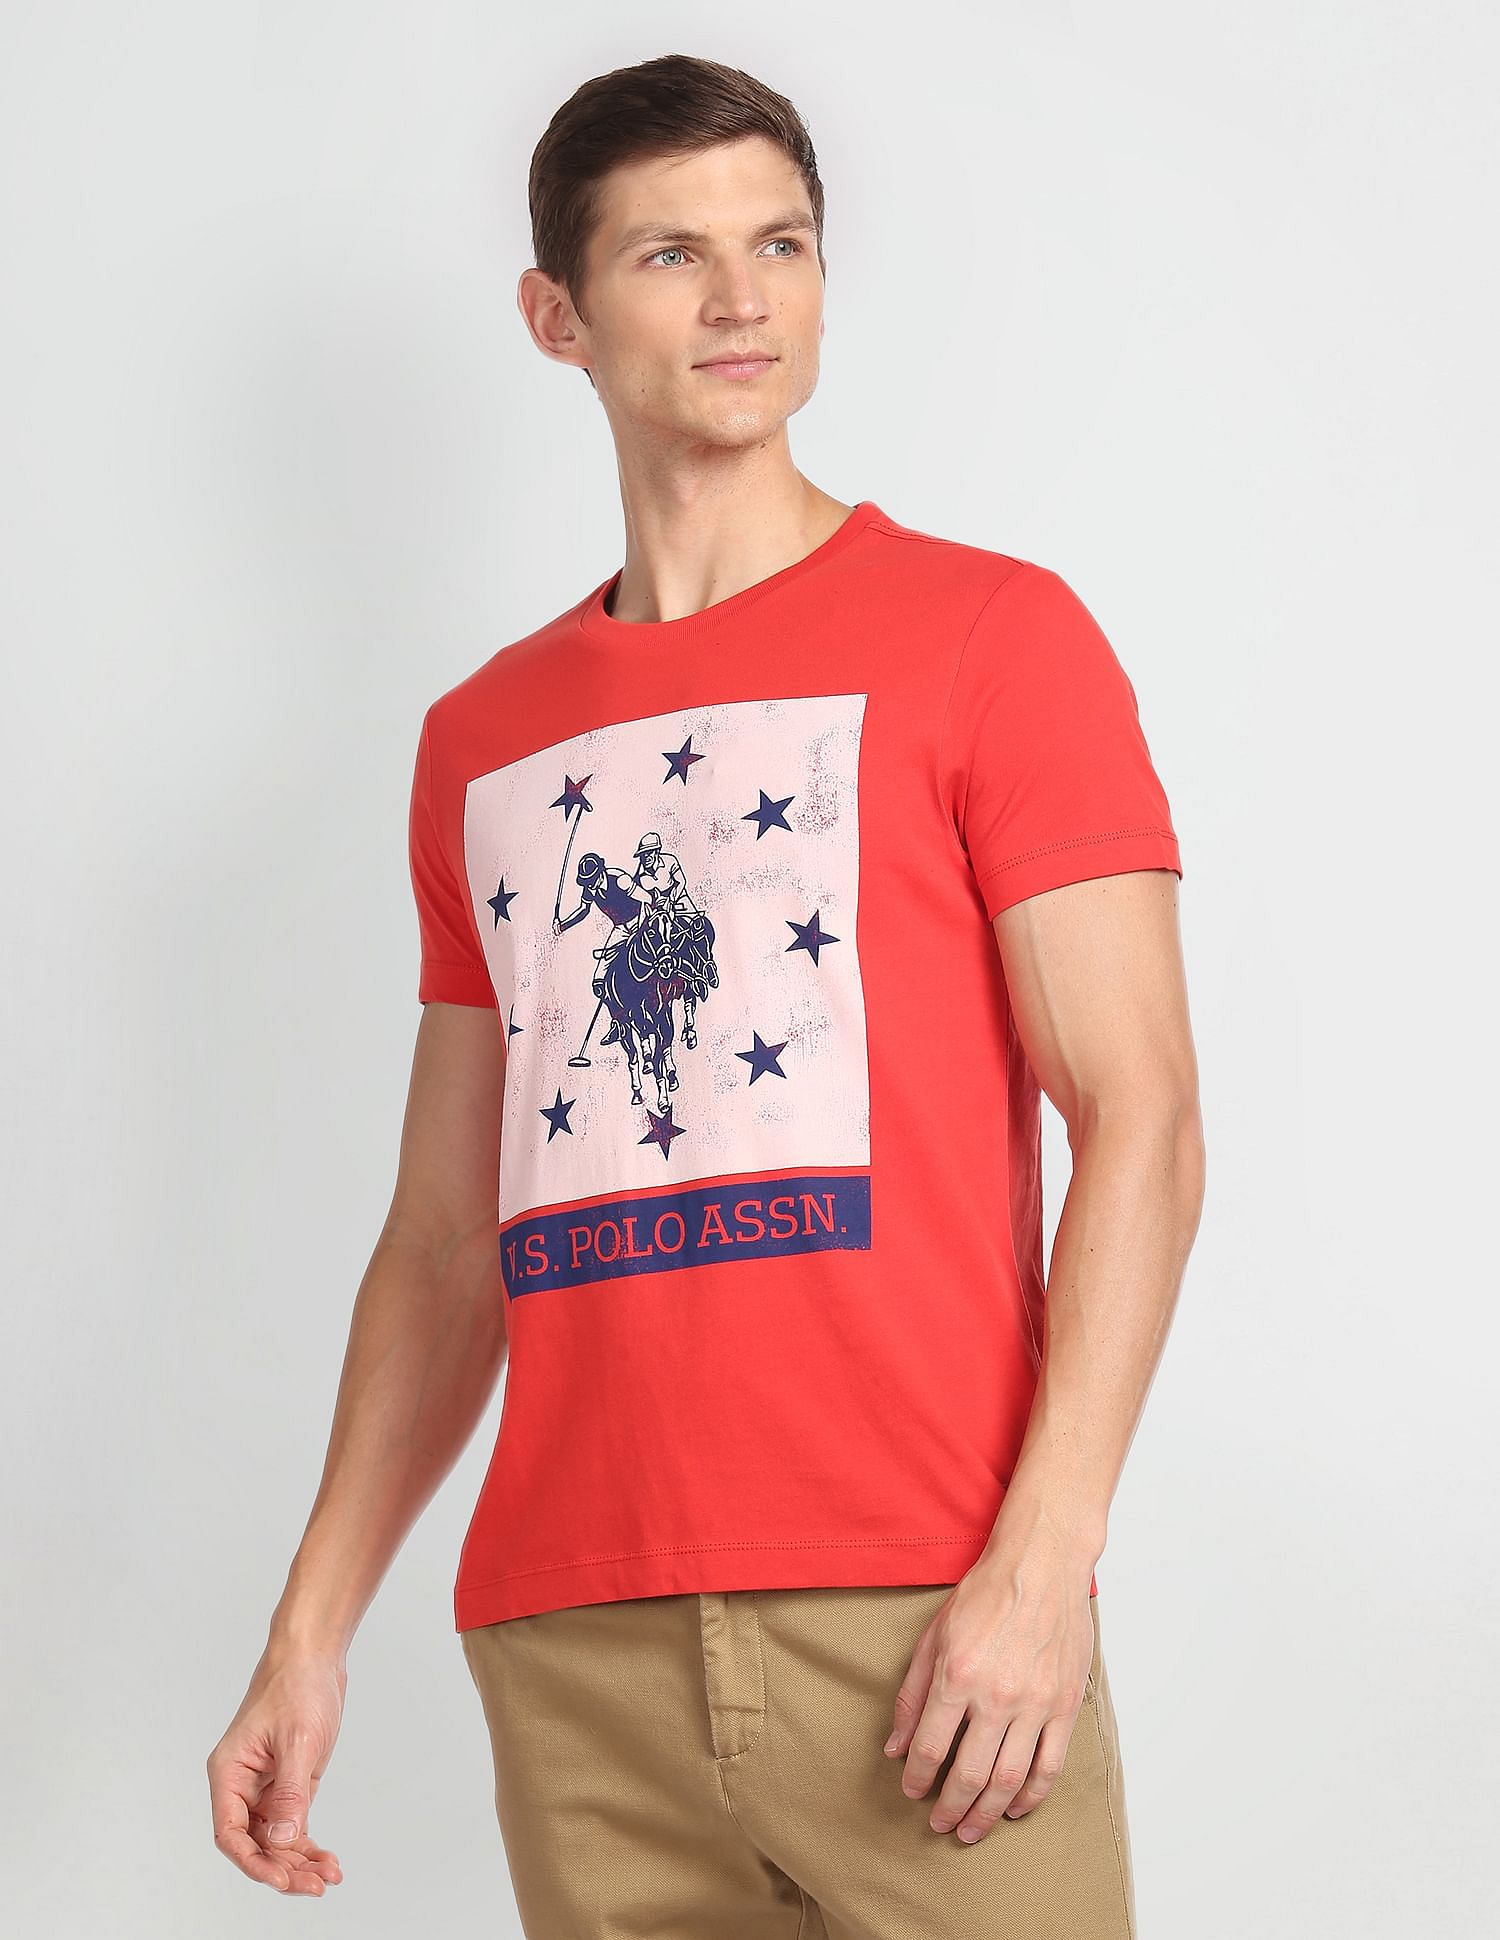 Buy U.S. Polo Assn. Denim Co. Crew Neck Printed T-Shirt - NNNOW.com